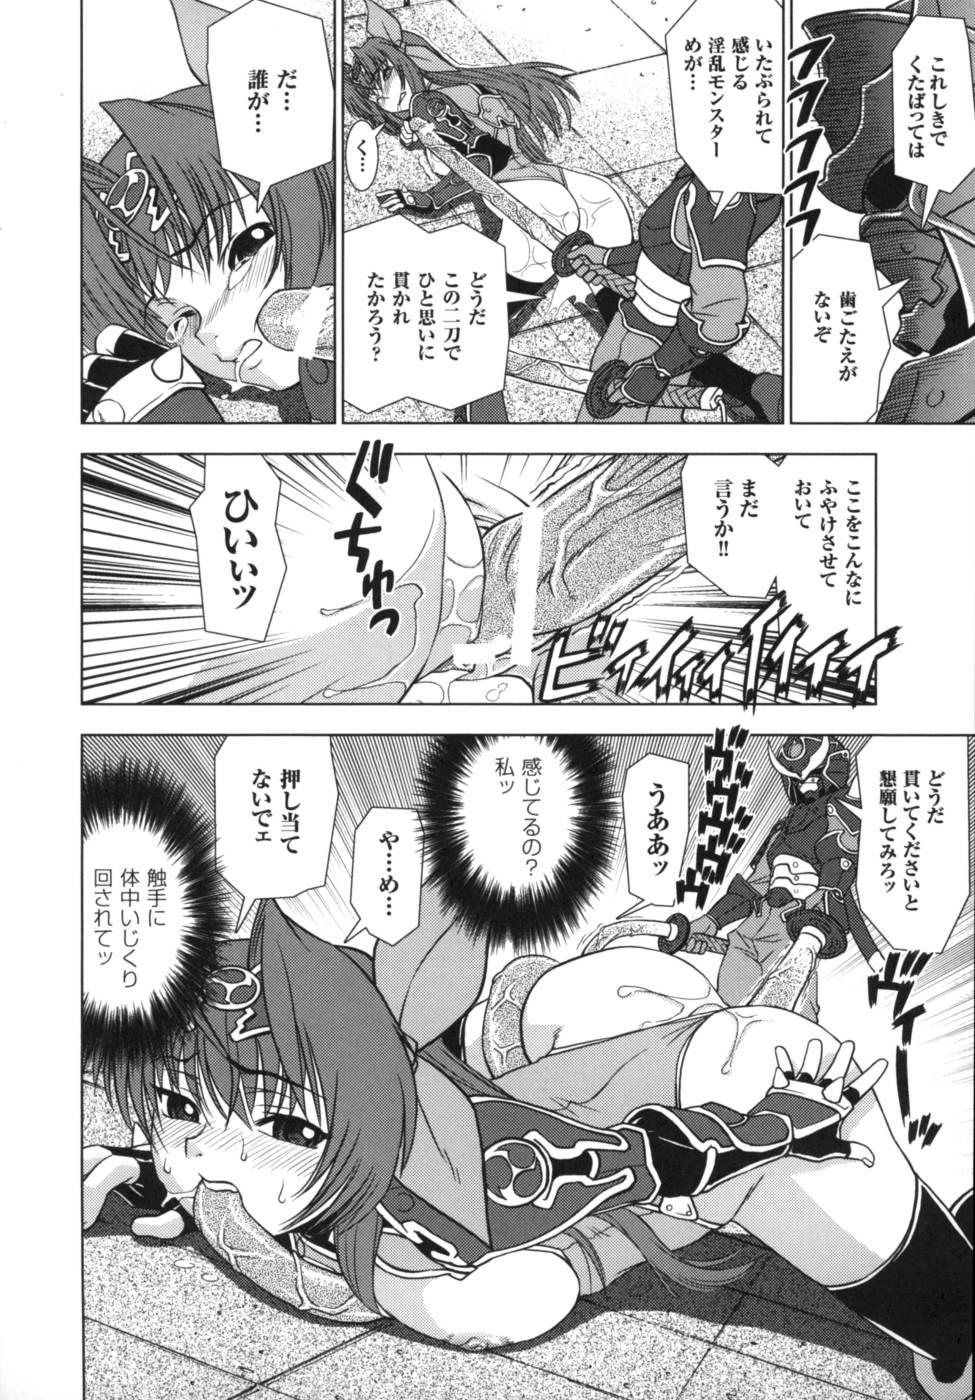 [Anthology] Ikazuchi Senshi Raidy ~Haja no Raikou~ | Lightning Warrior Raidy Anthology Comics 102